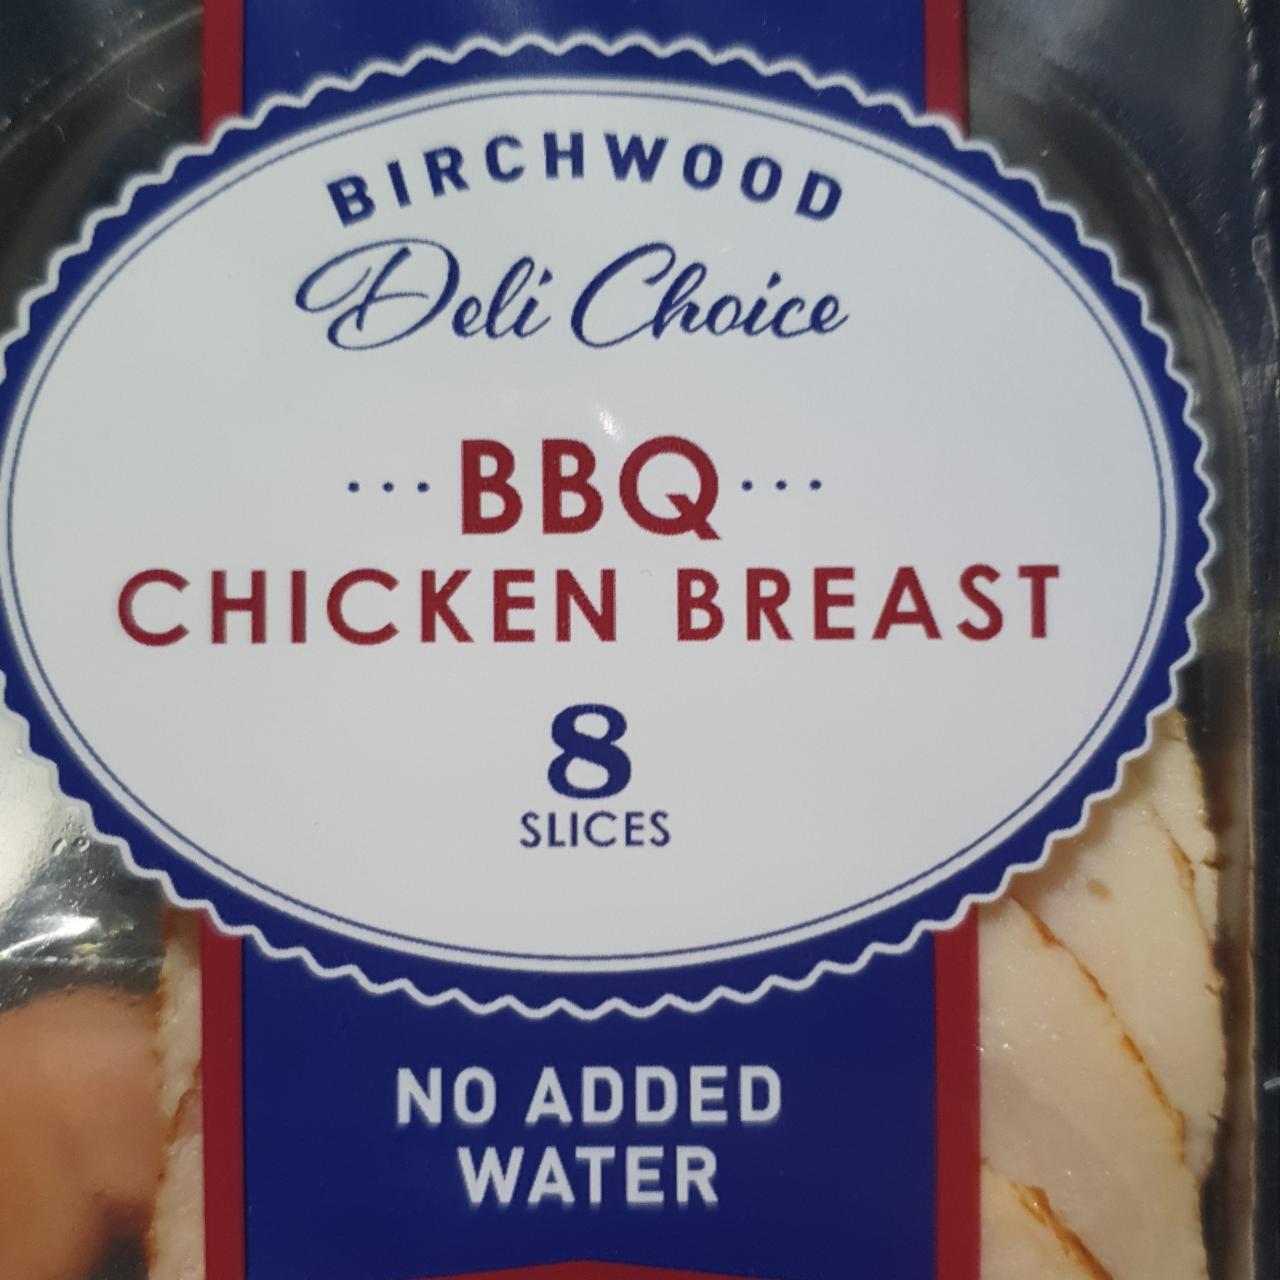 Fotografie - BBQ Chicken Breast Deli Choice Birchwood